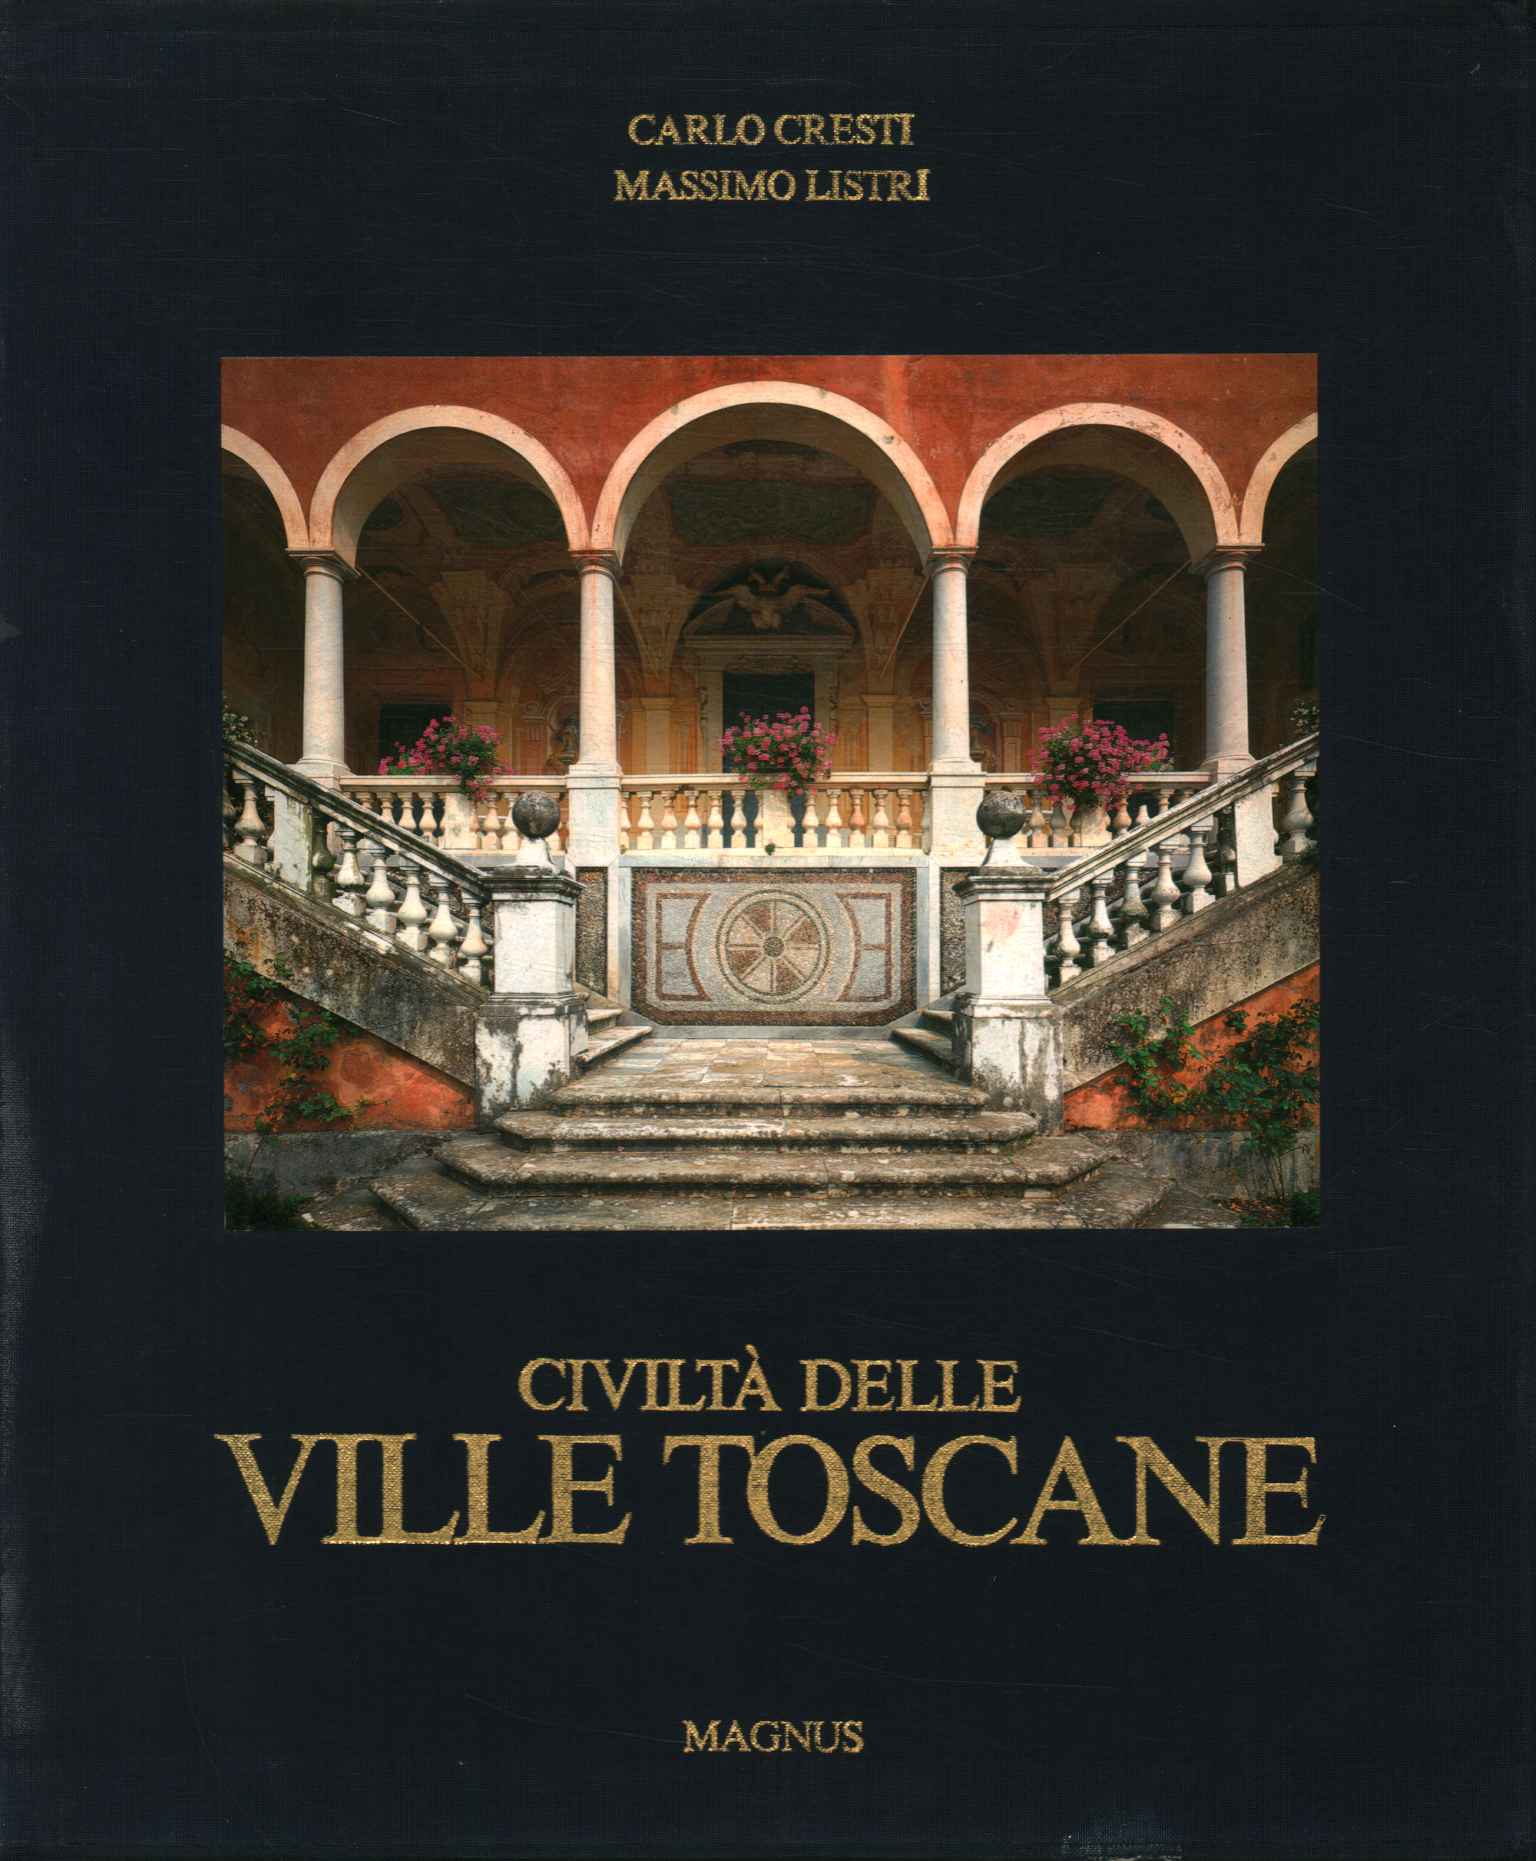 Civilization of the Tuscan villas